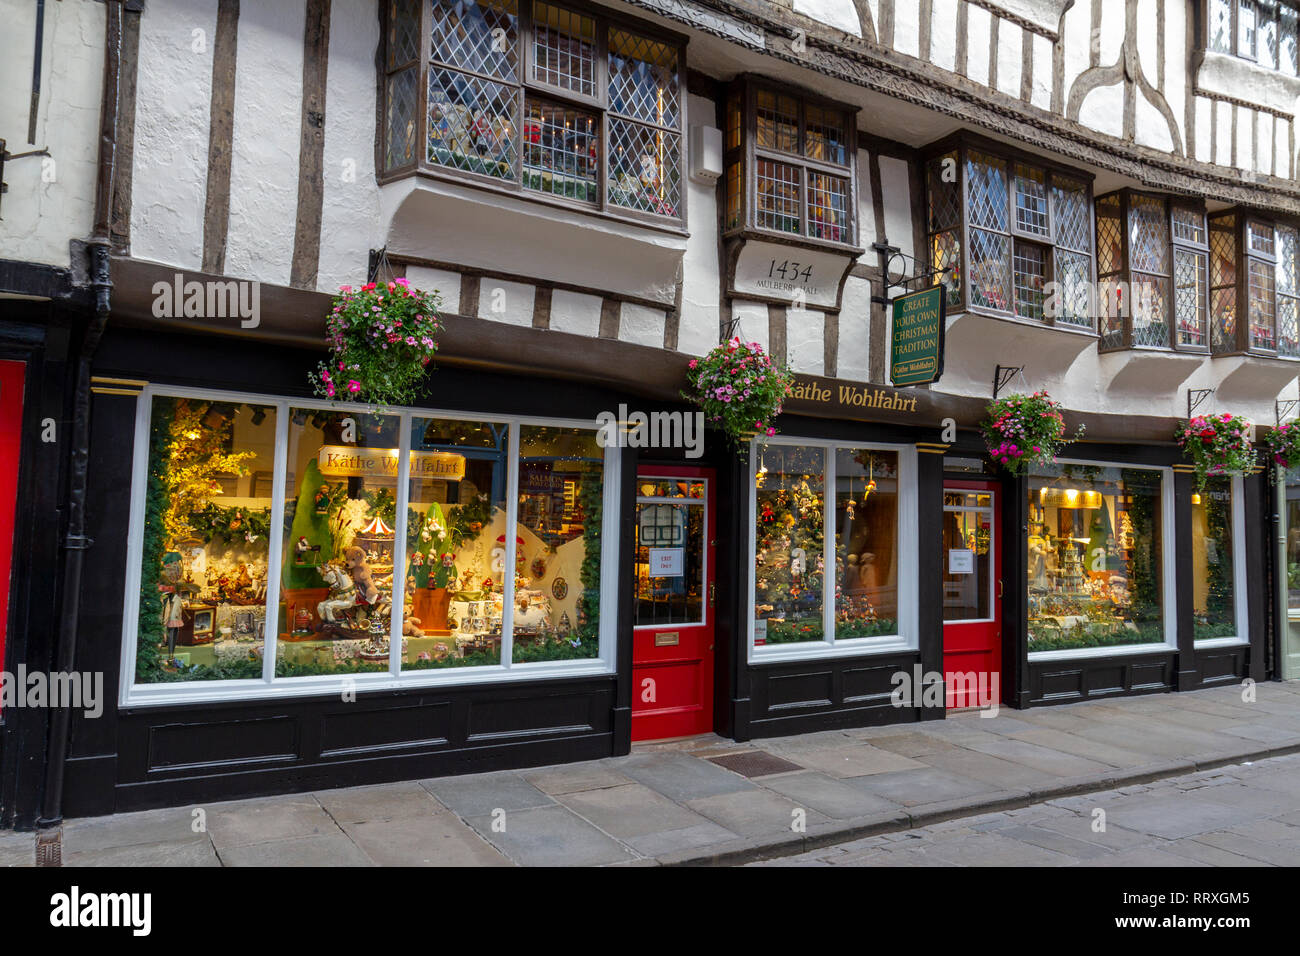 La Kathe Wohlfahrt boutique de Noël dans la ville de York, North Yorkshire, UK. Banque D'Images